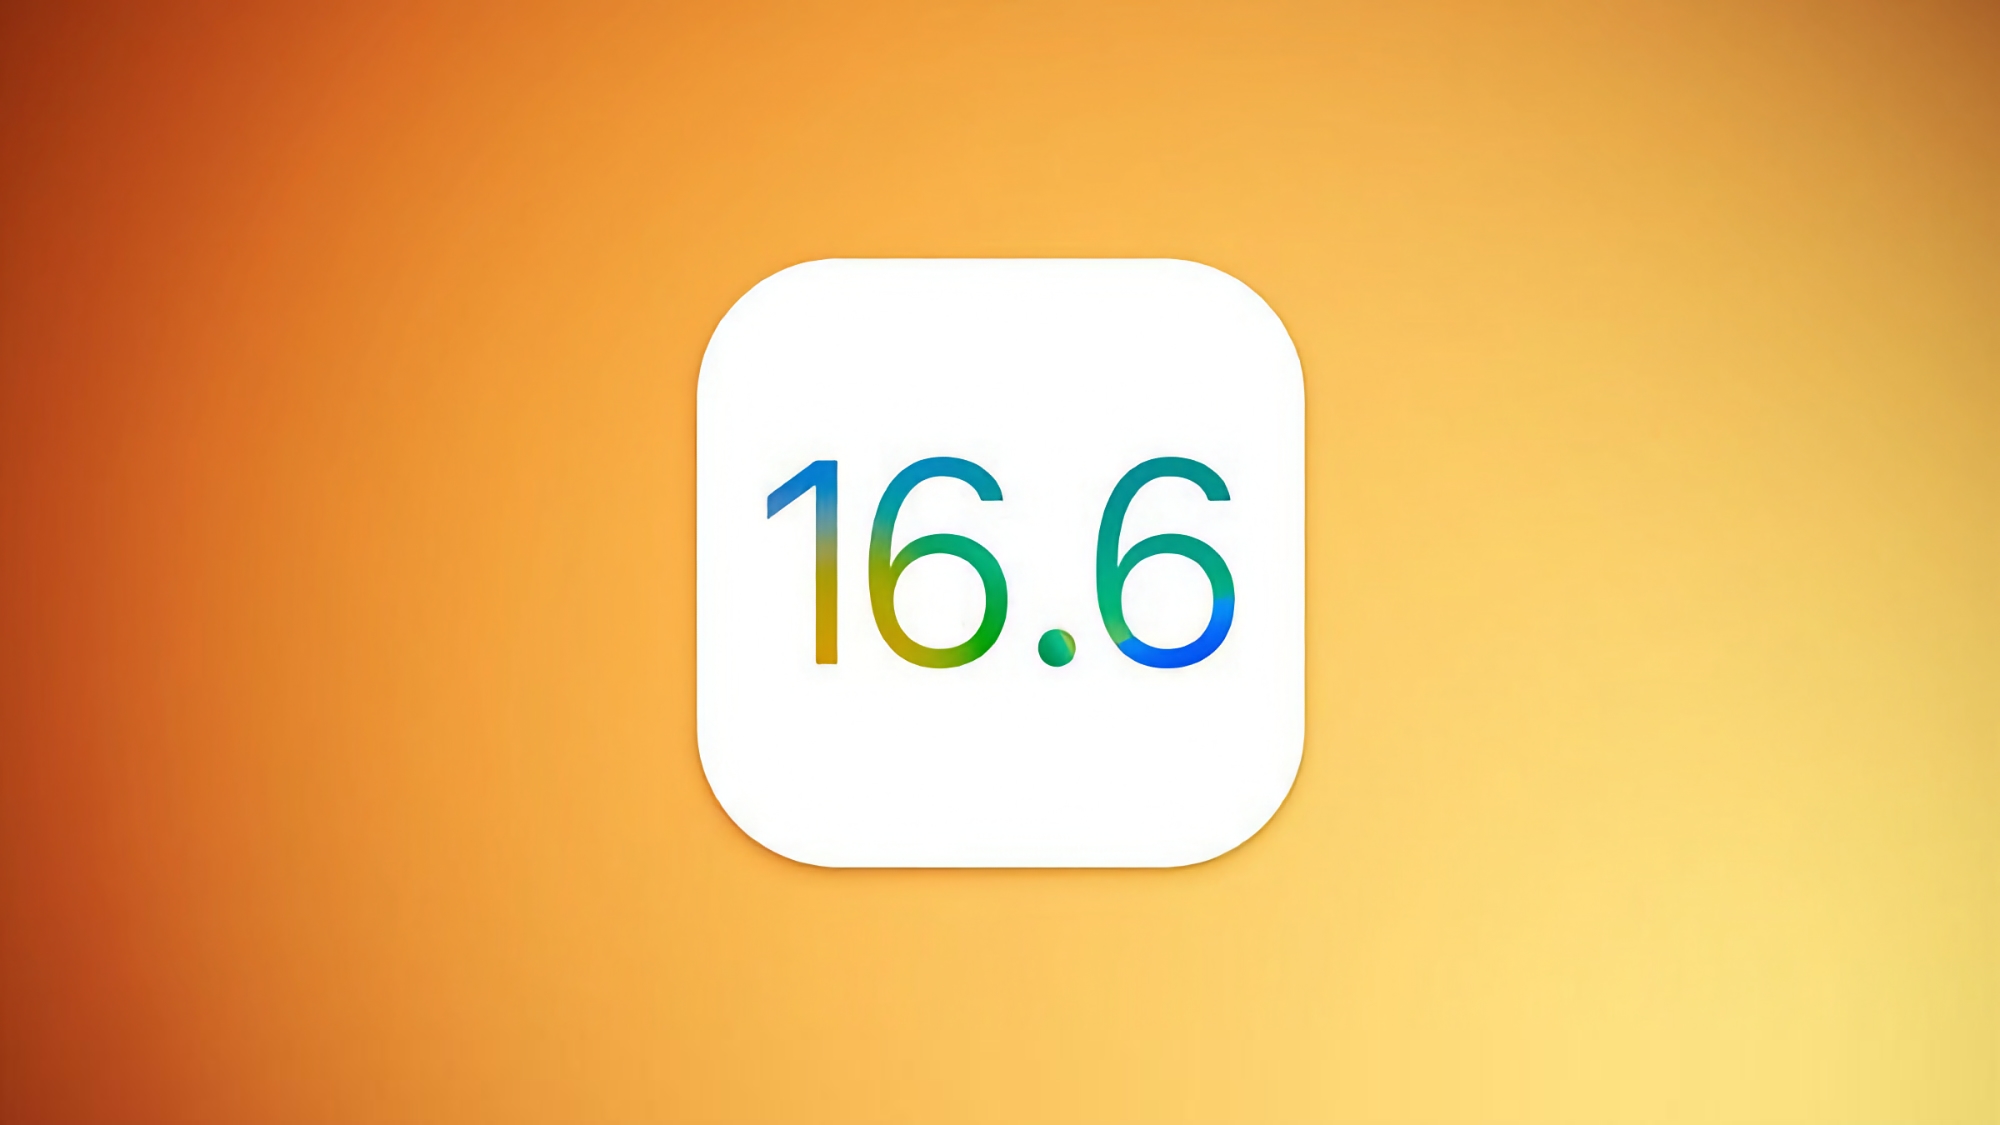 La troisième version bêta d'iOS 16.6 pour les utilisateurs d'iPhone a été publiée.